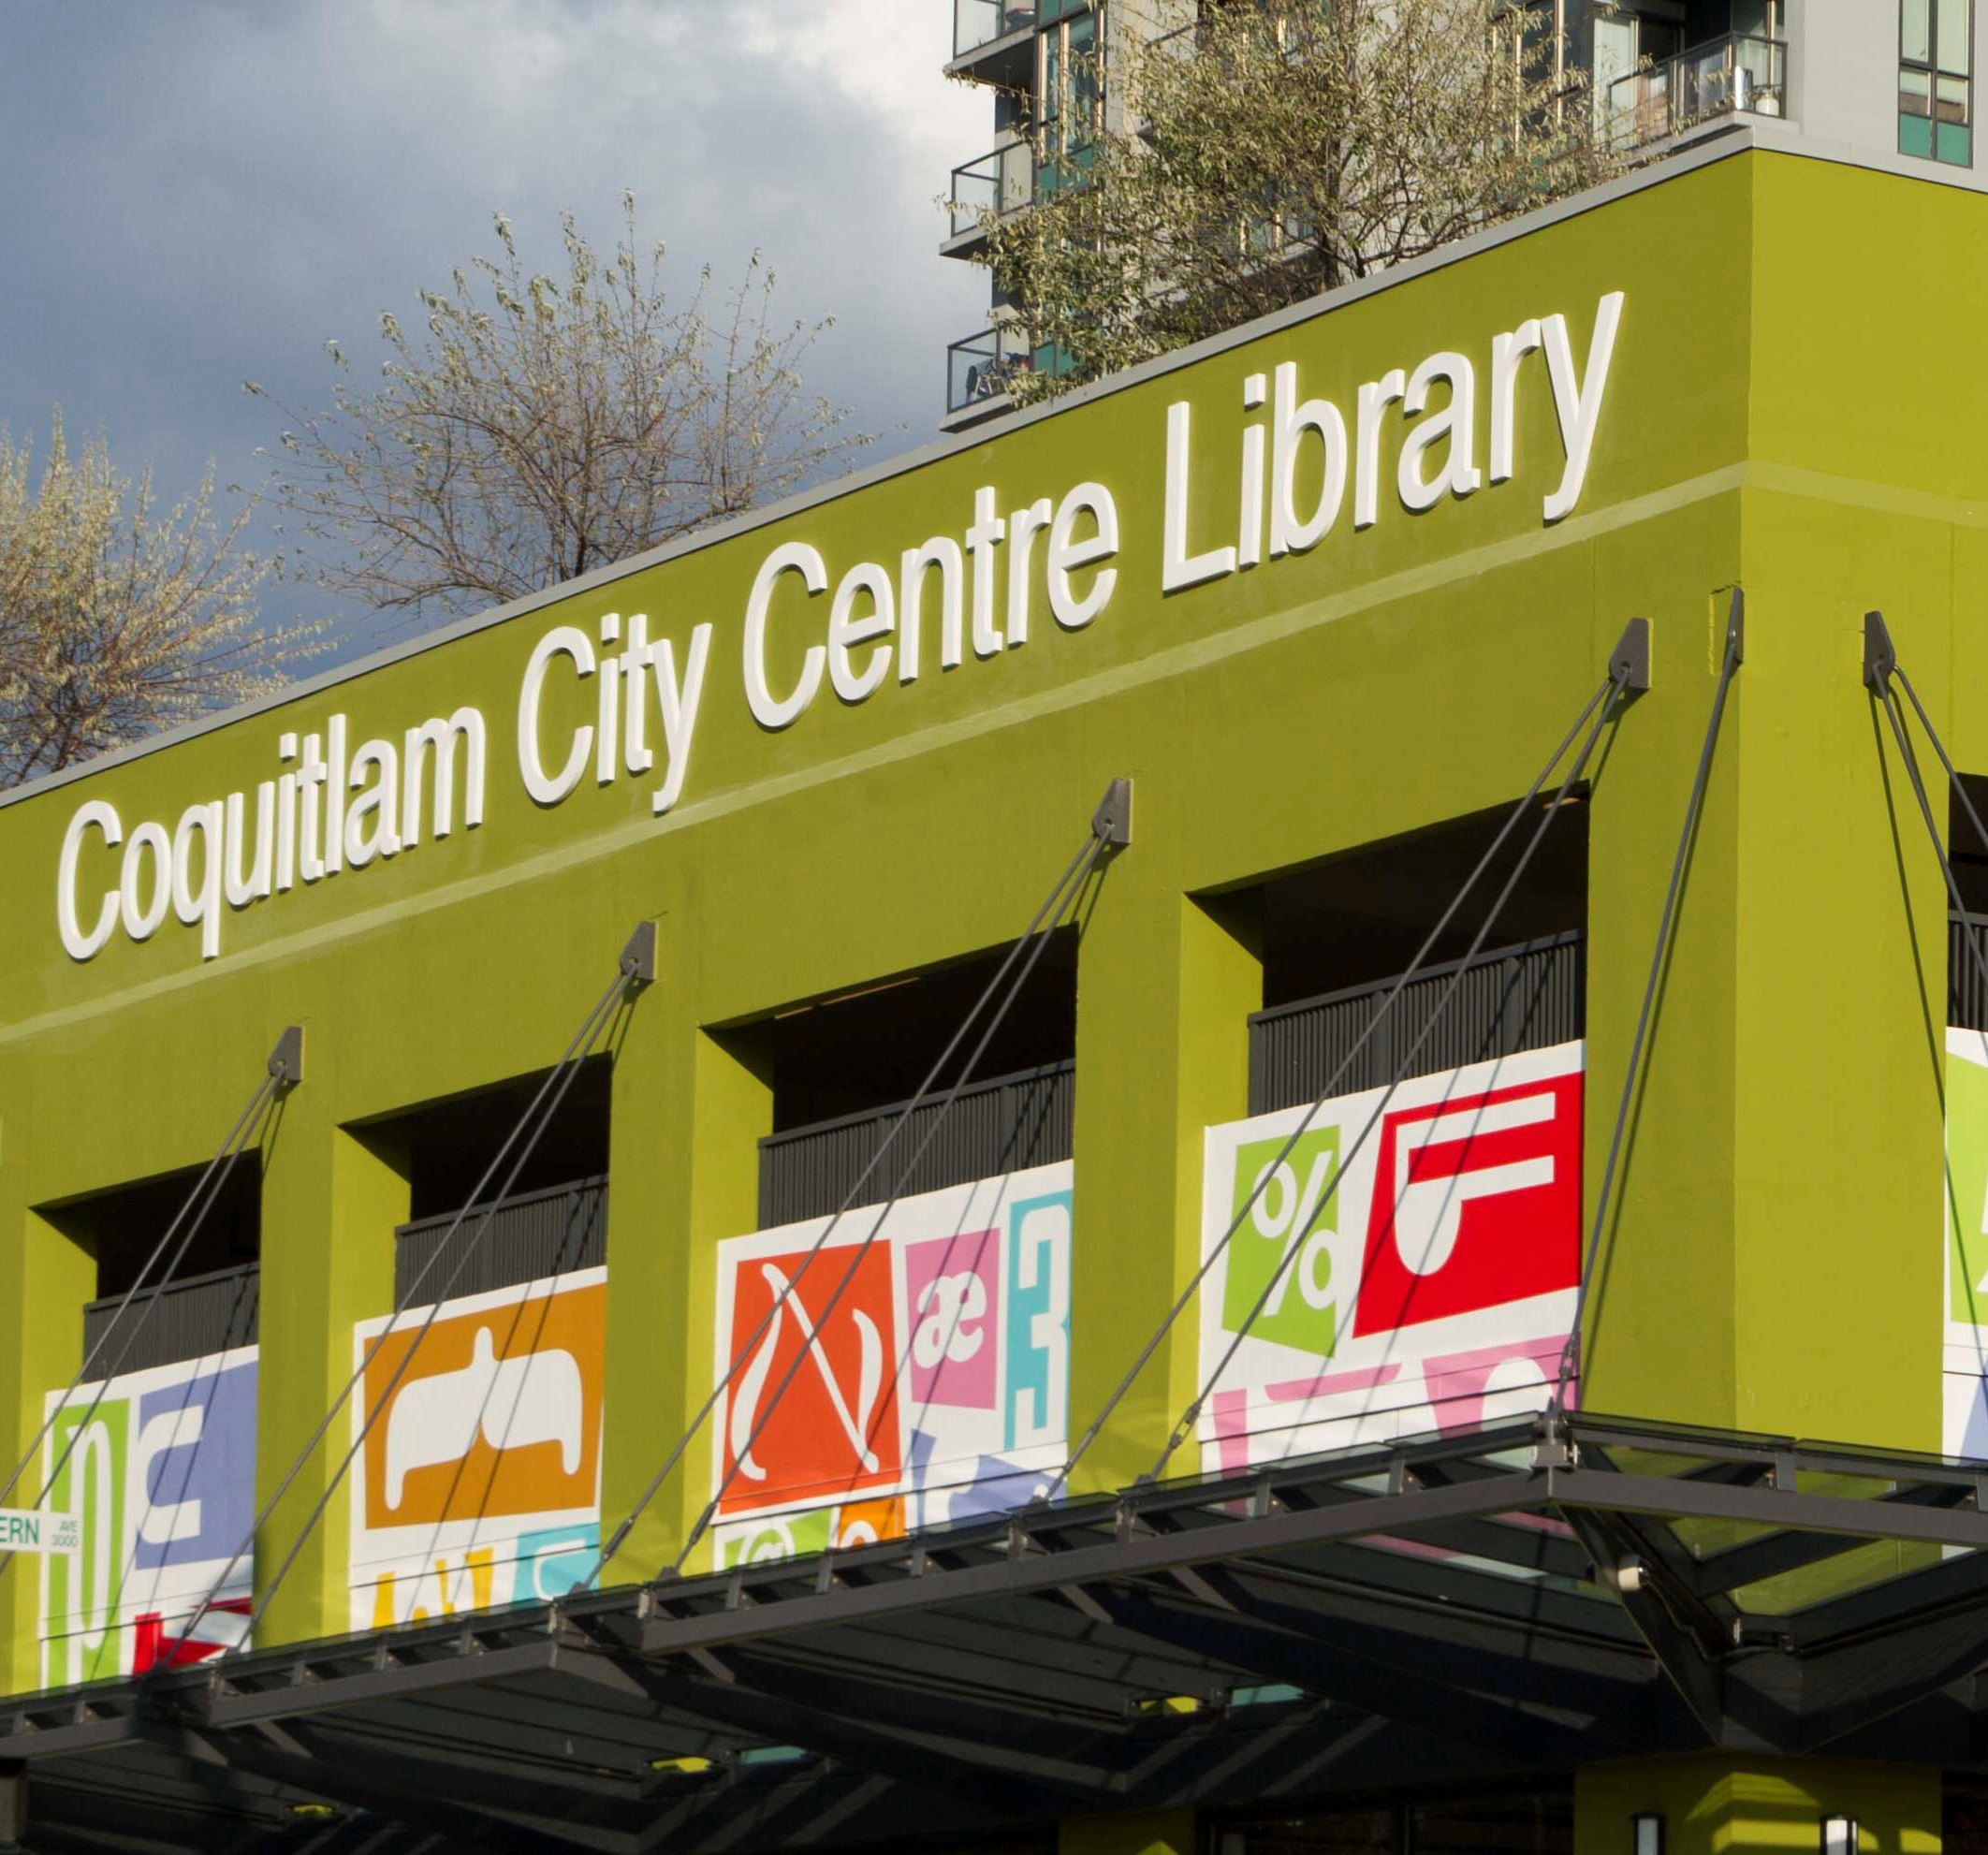 Coquitlam Public Library